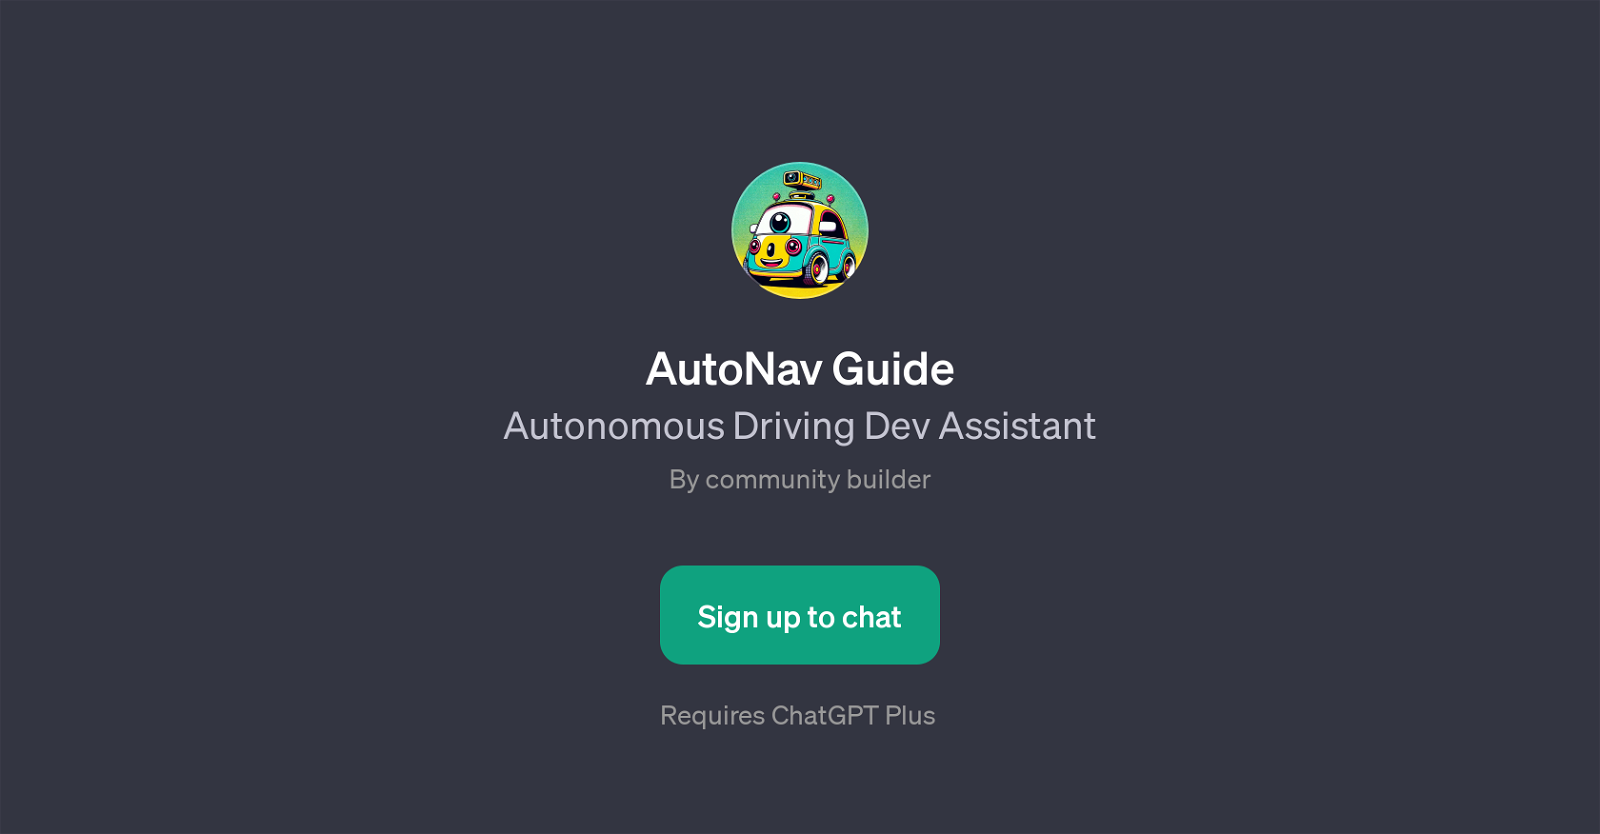 AutoNav Guide website